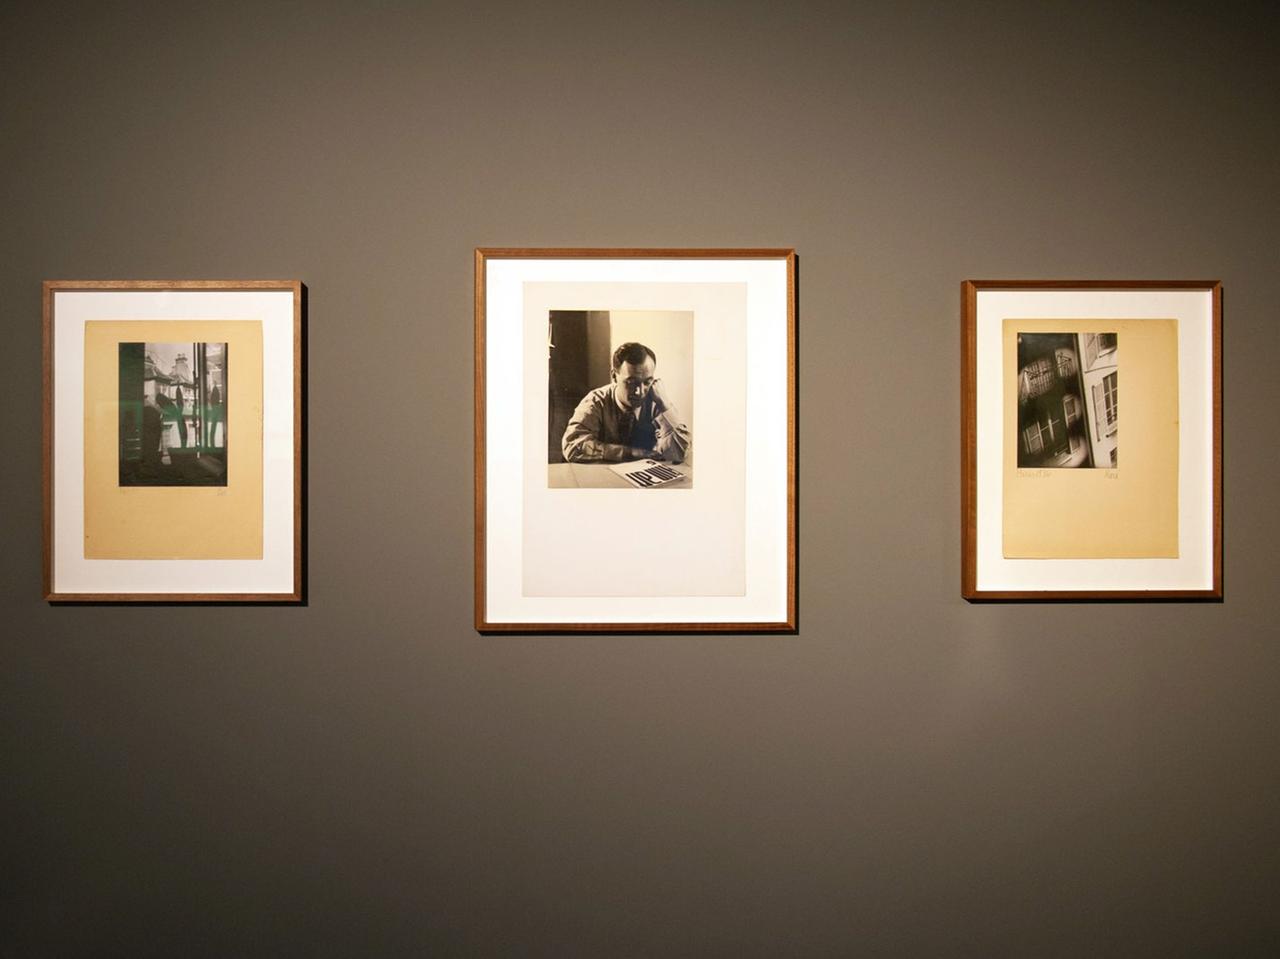 Fotos der Ausstellung "Ein Koffer voller Bilder" hängen im Amerika Haus der Galerie C/O Berlin. C/O Berlin präsentiert weltweit als erste Institution eine große Retrospektive von Lore Krüger.